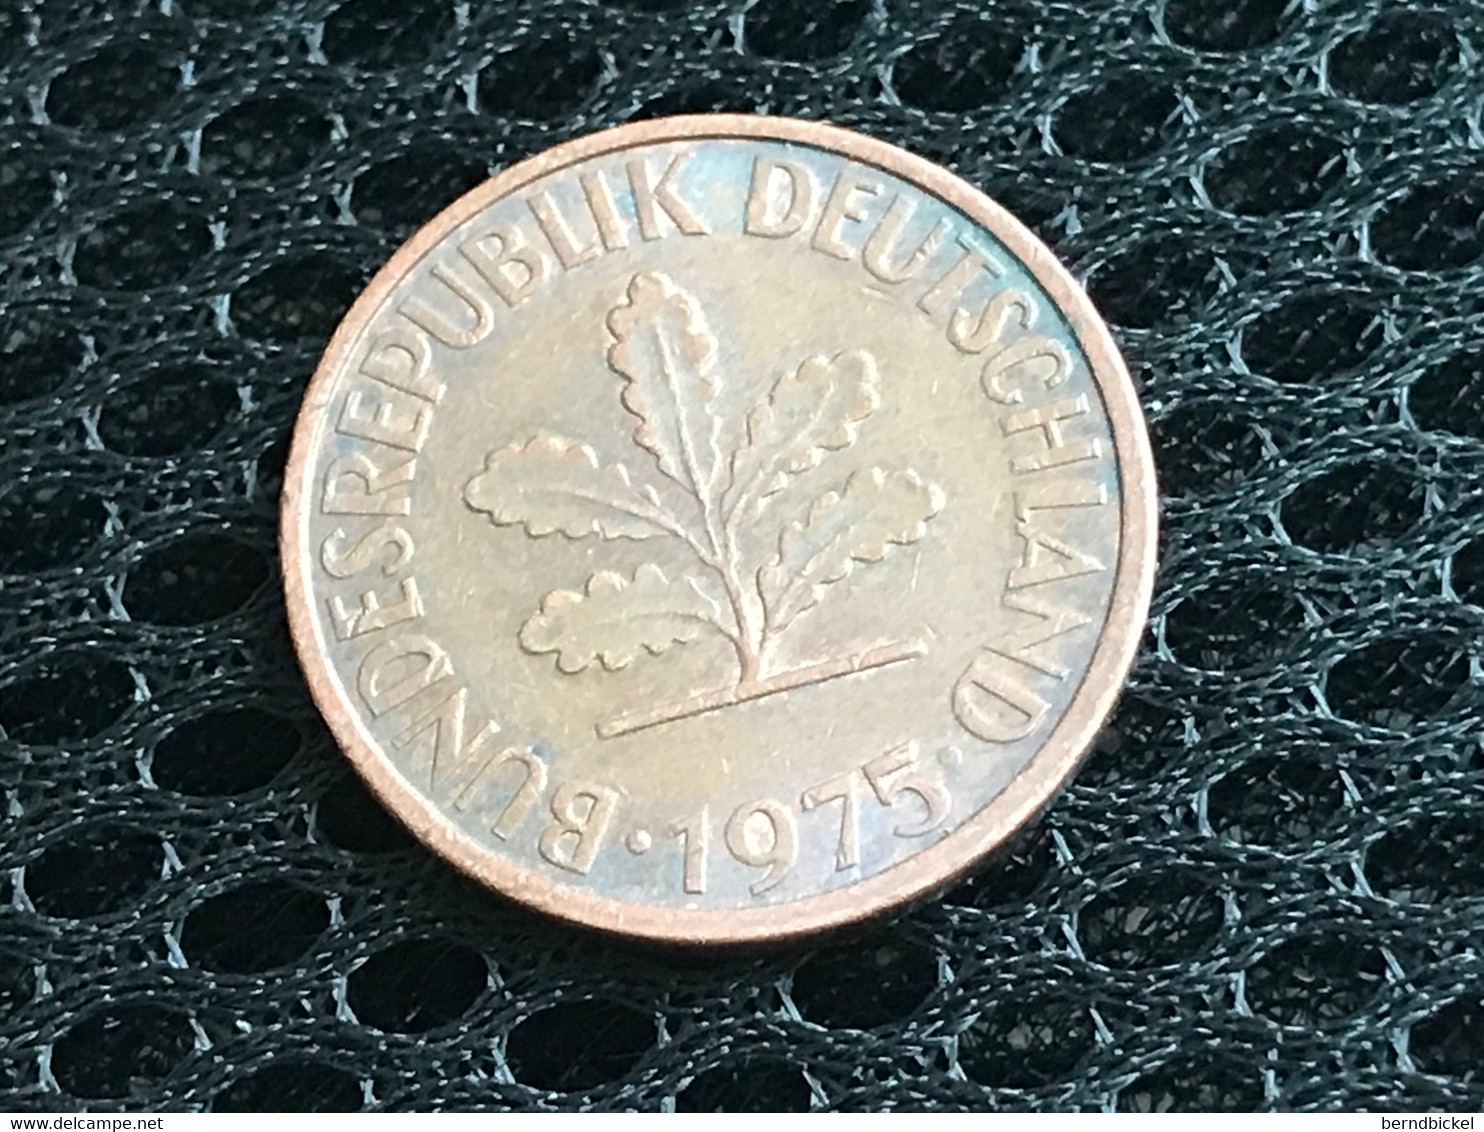 Münze Münzen Umlaufmünze Deutschland BRD 2 Pfennig 1975 Münzzeichen F - Barbados (Barbuda)